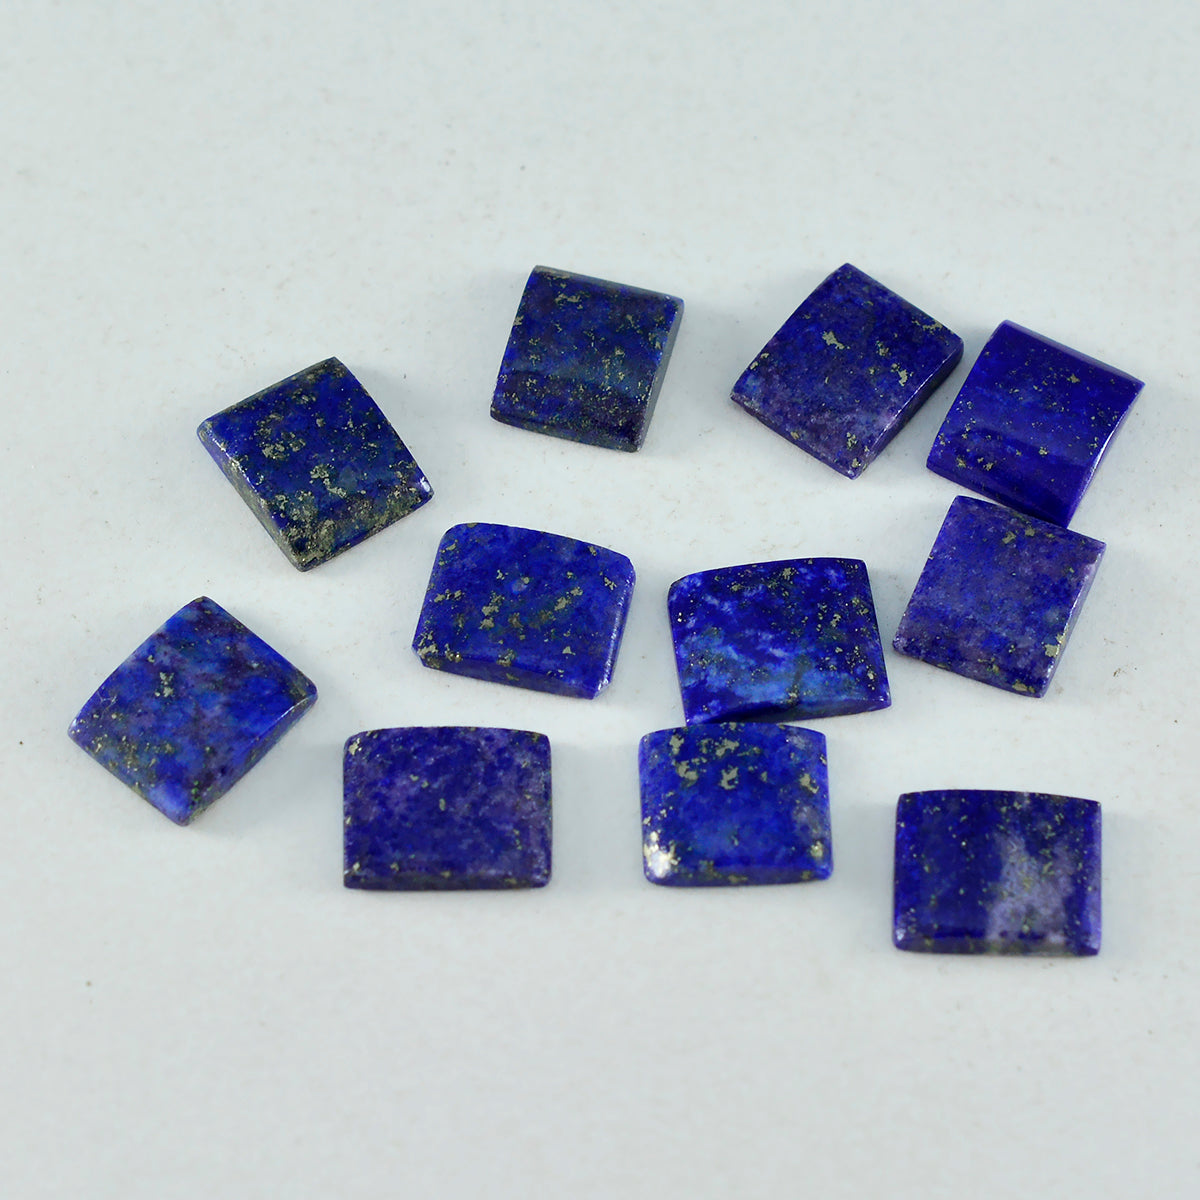 Riyogems 1PC blauwe lapis lazuli cabochon 3x5 mm achthoekige vorm geweldige kwaliteit edelstenen